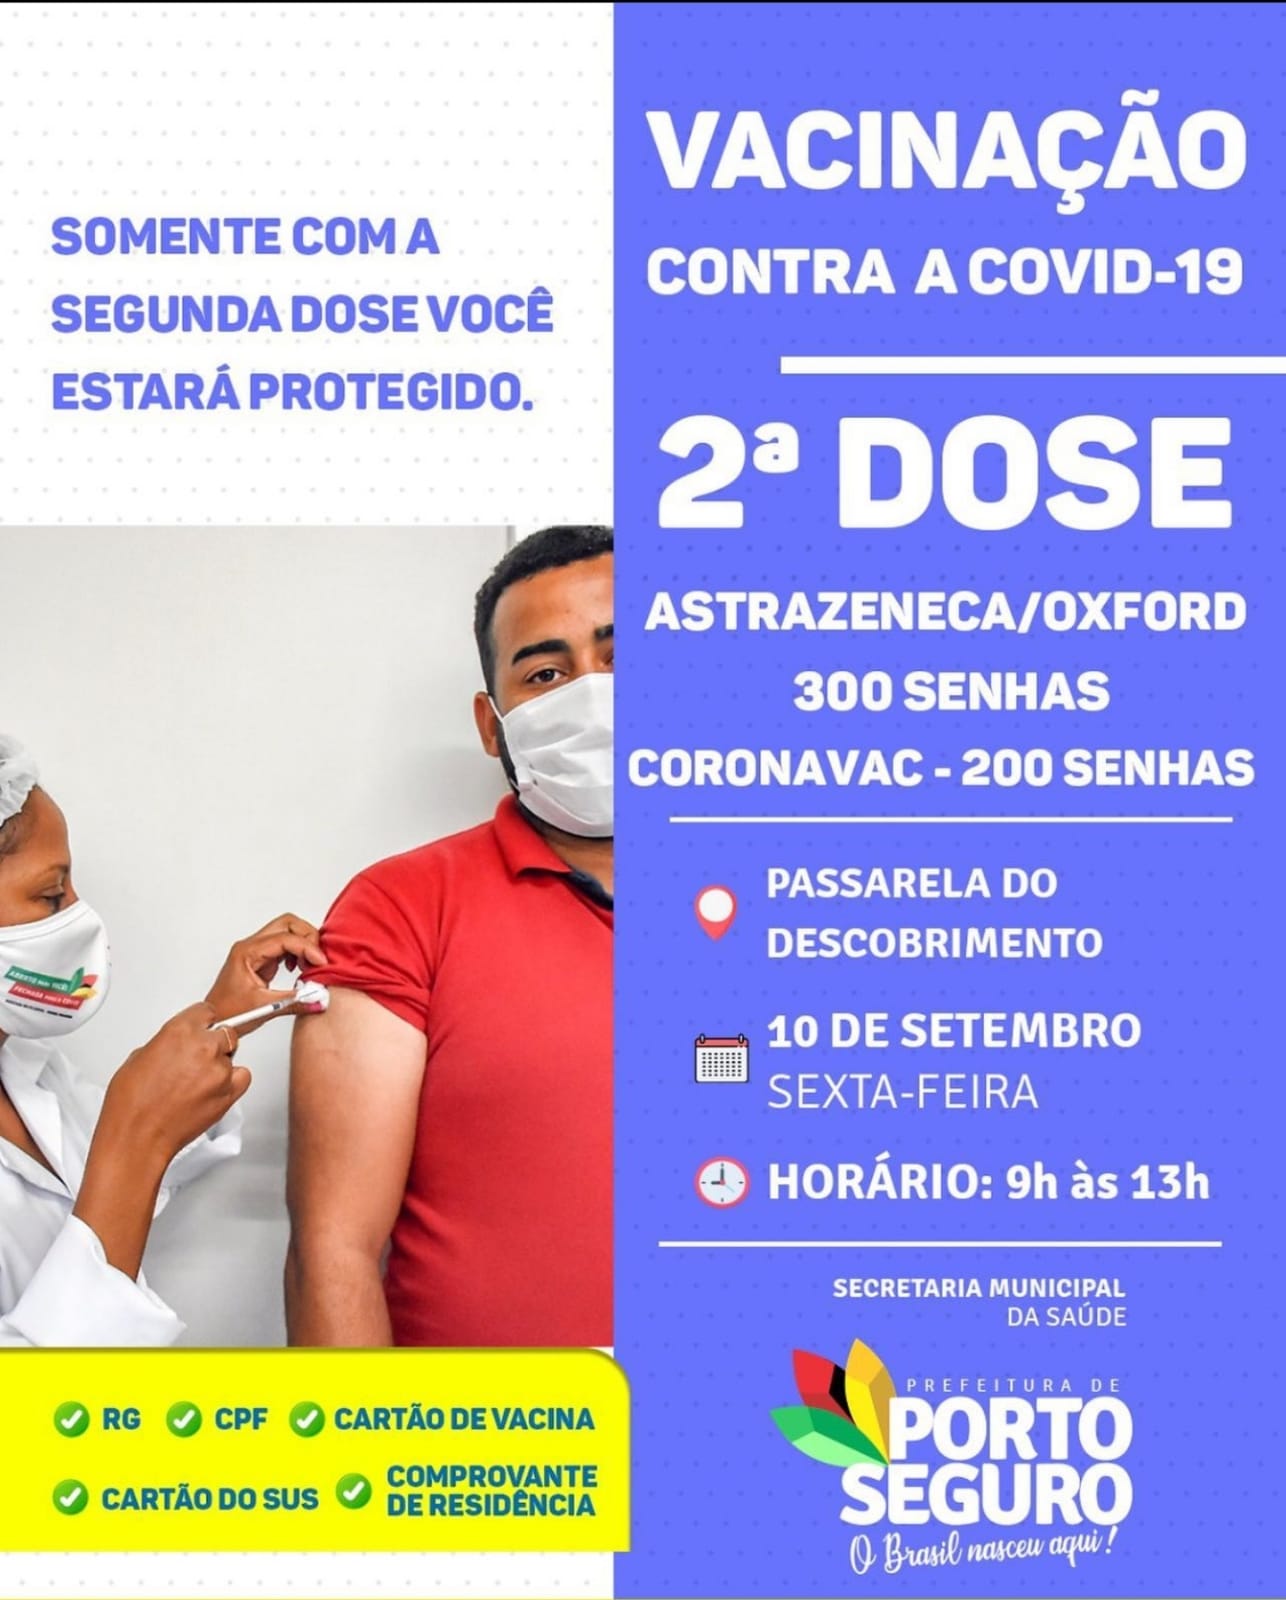 Porto Seguro: Cronograma de Vacinação contra a Covid-19 (10 de SETEMBRO) 29